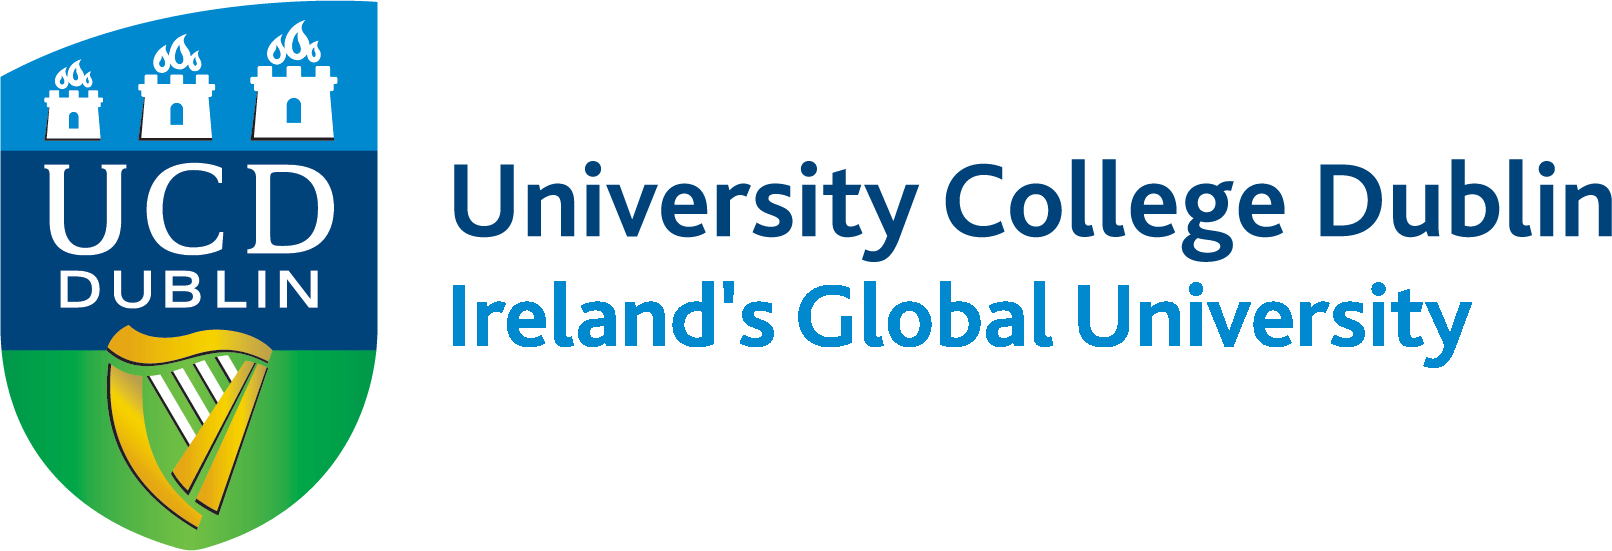 University College Dublin, UCD Dublin